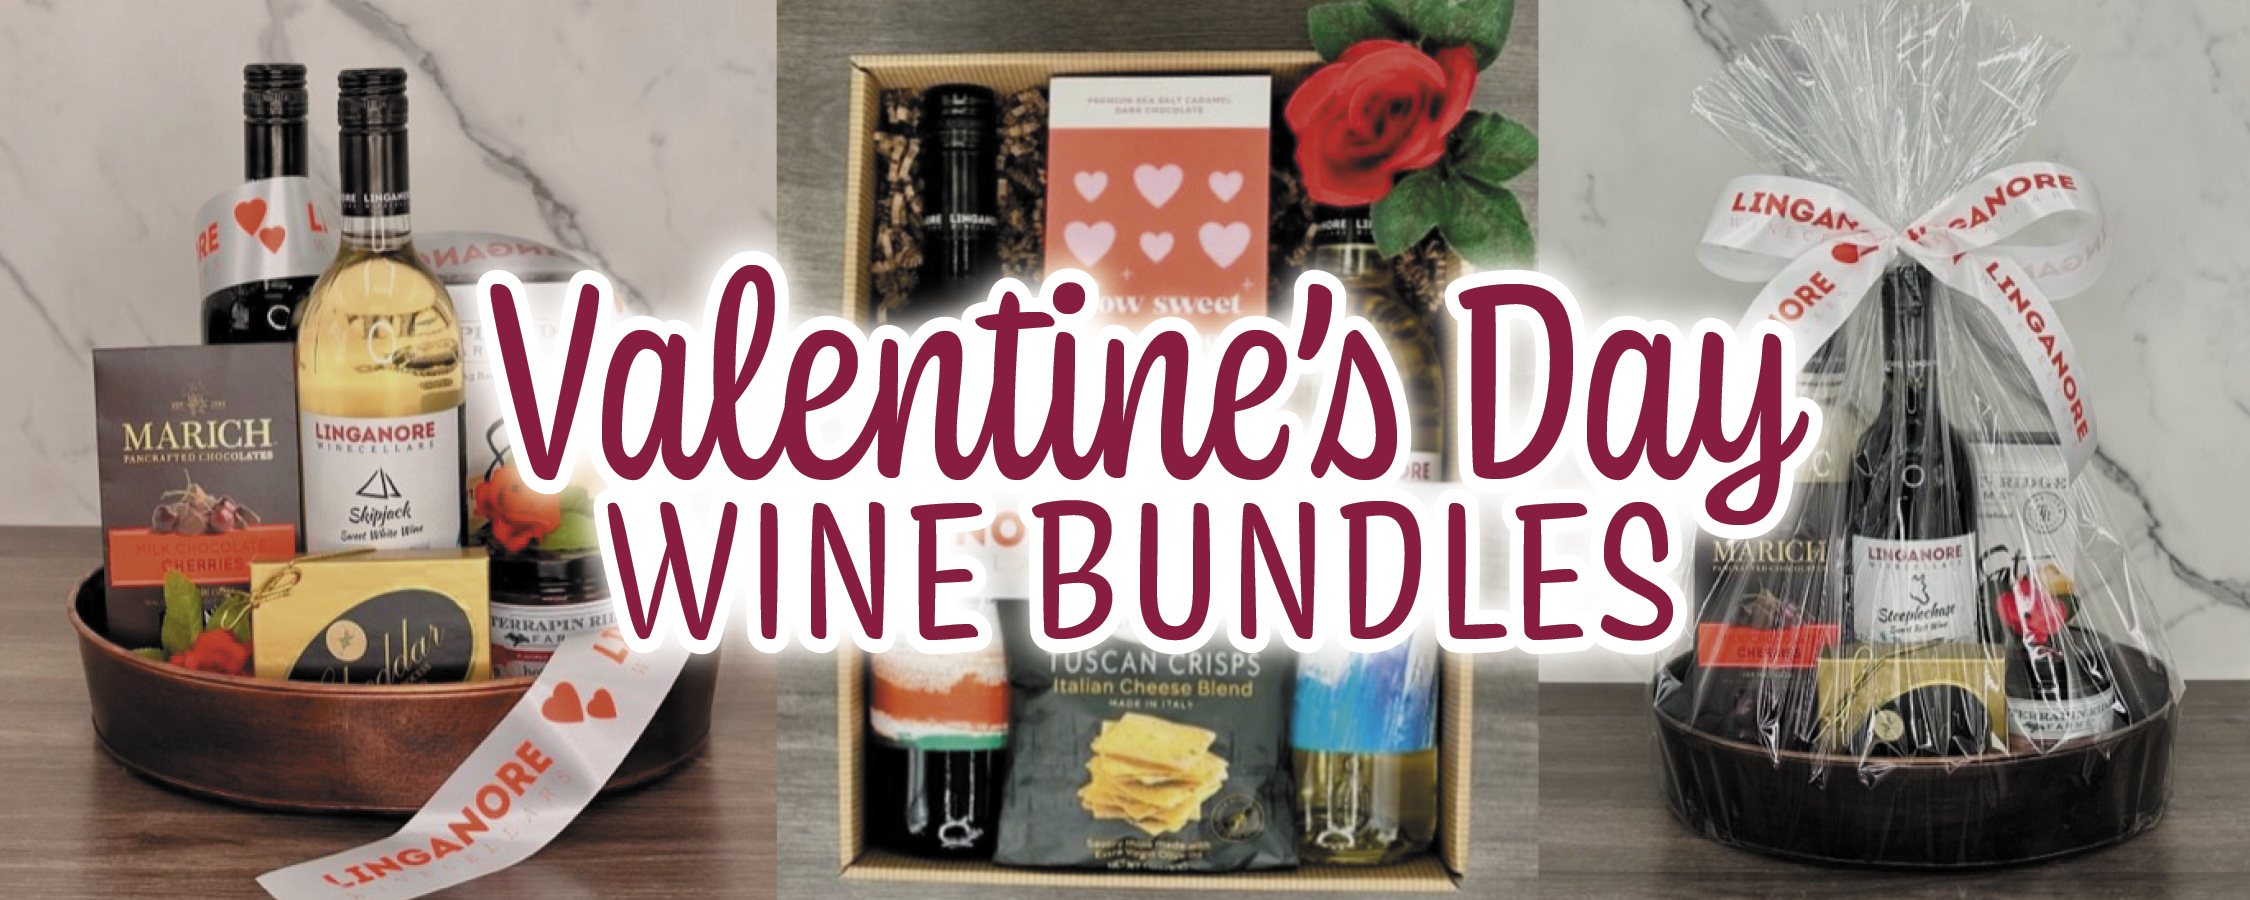 valentines day wine bundle